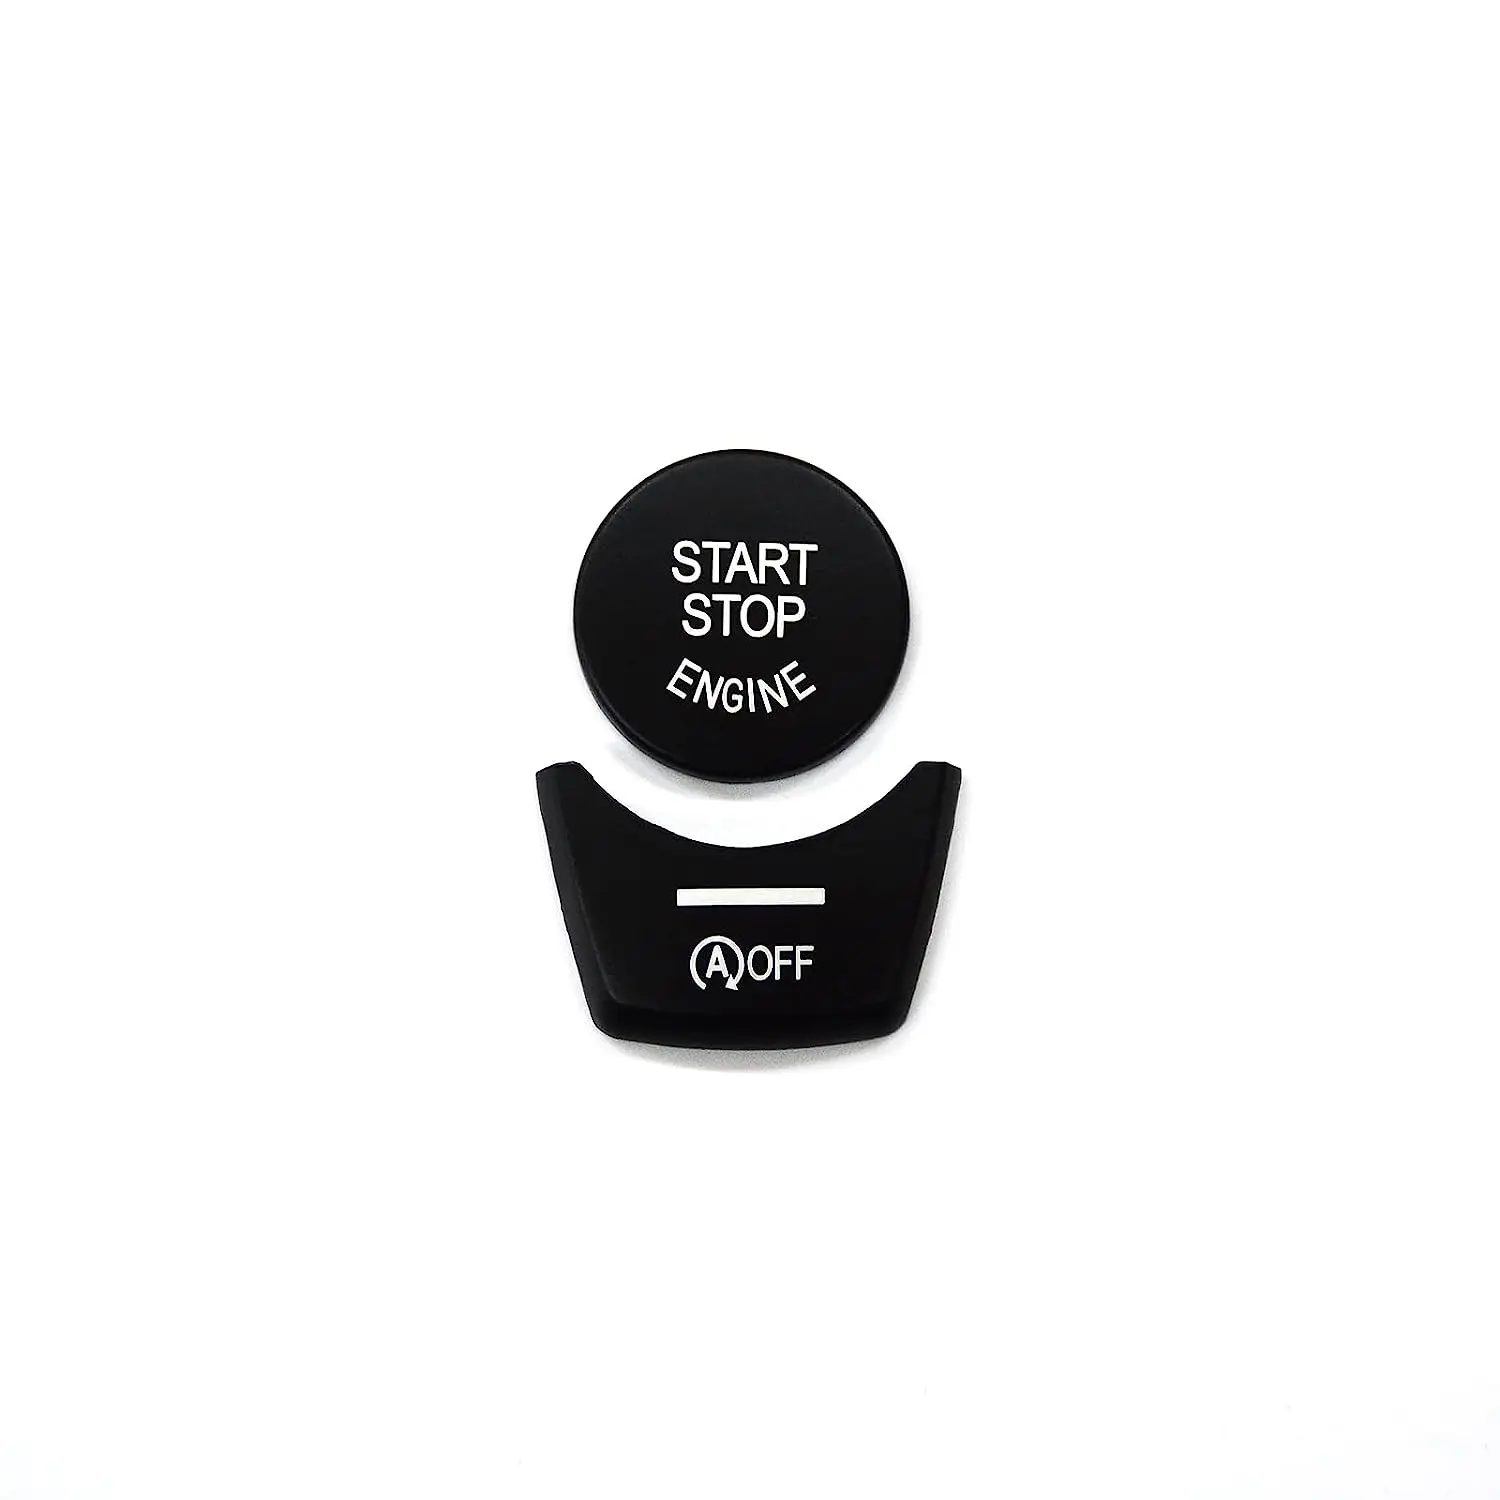 

Матовая черная накладка на переключатель кнопки старт-стоп для BMW F10 F01 F15, хромированные наклейки на переключатель электронного тормоза для серии 5 7 X5 (черный)